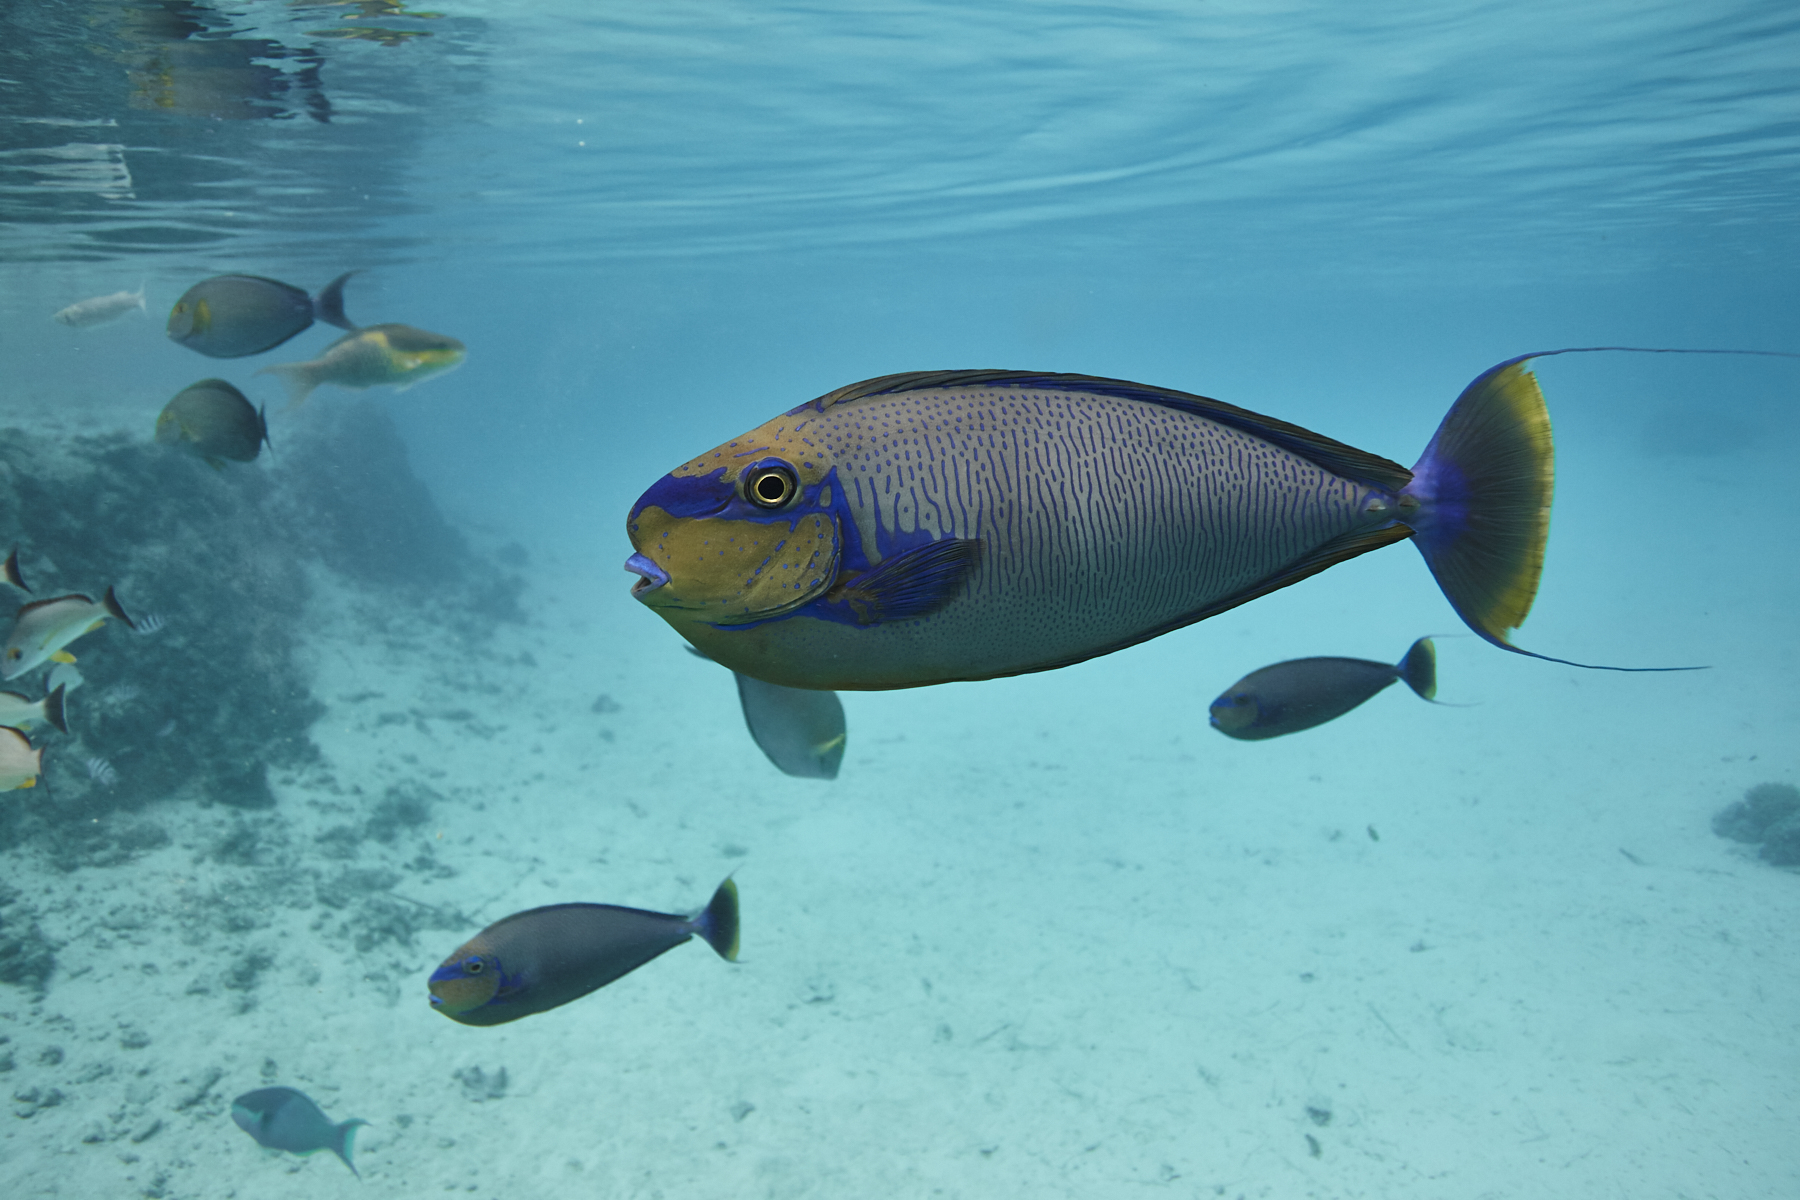 Aquatic Life at St. Regis Bora Bora